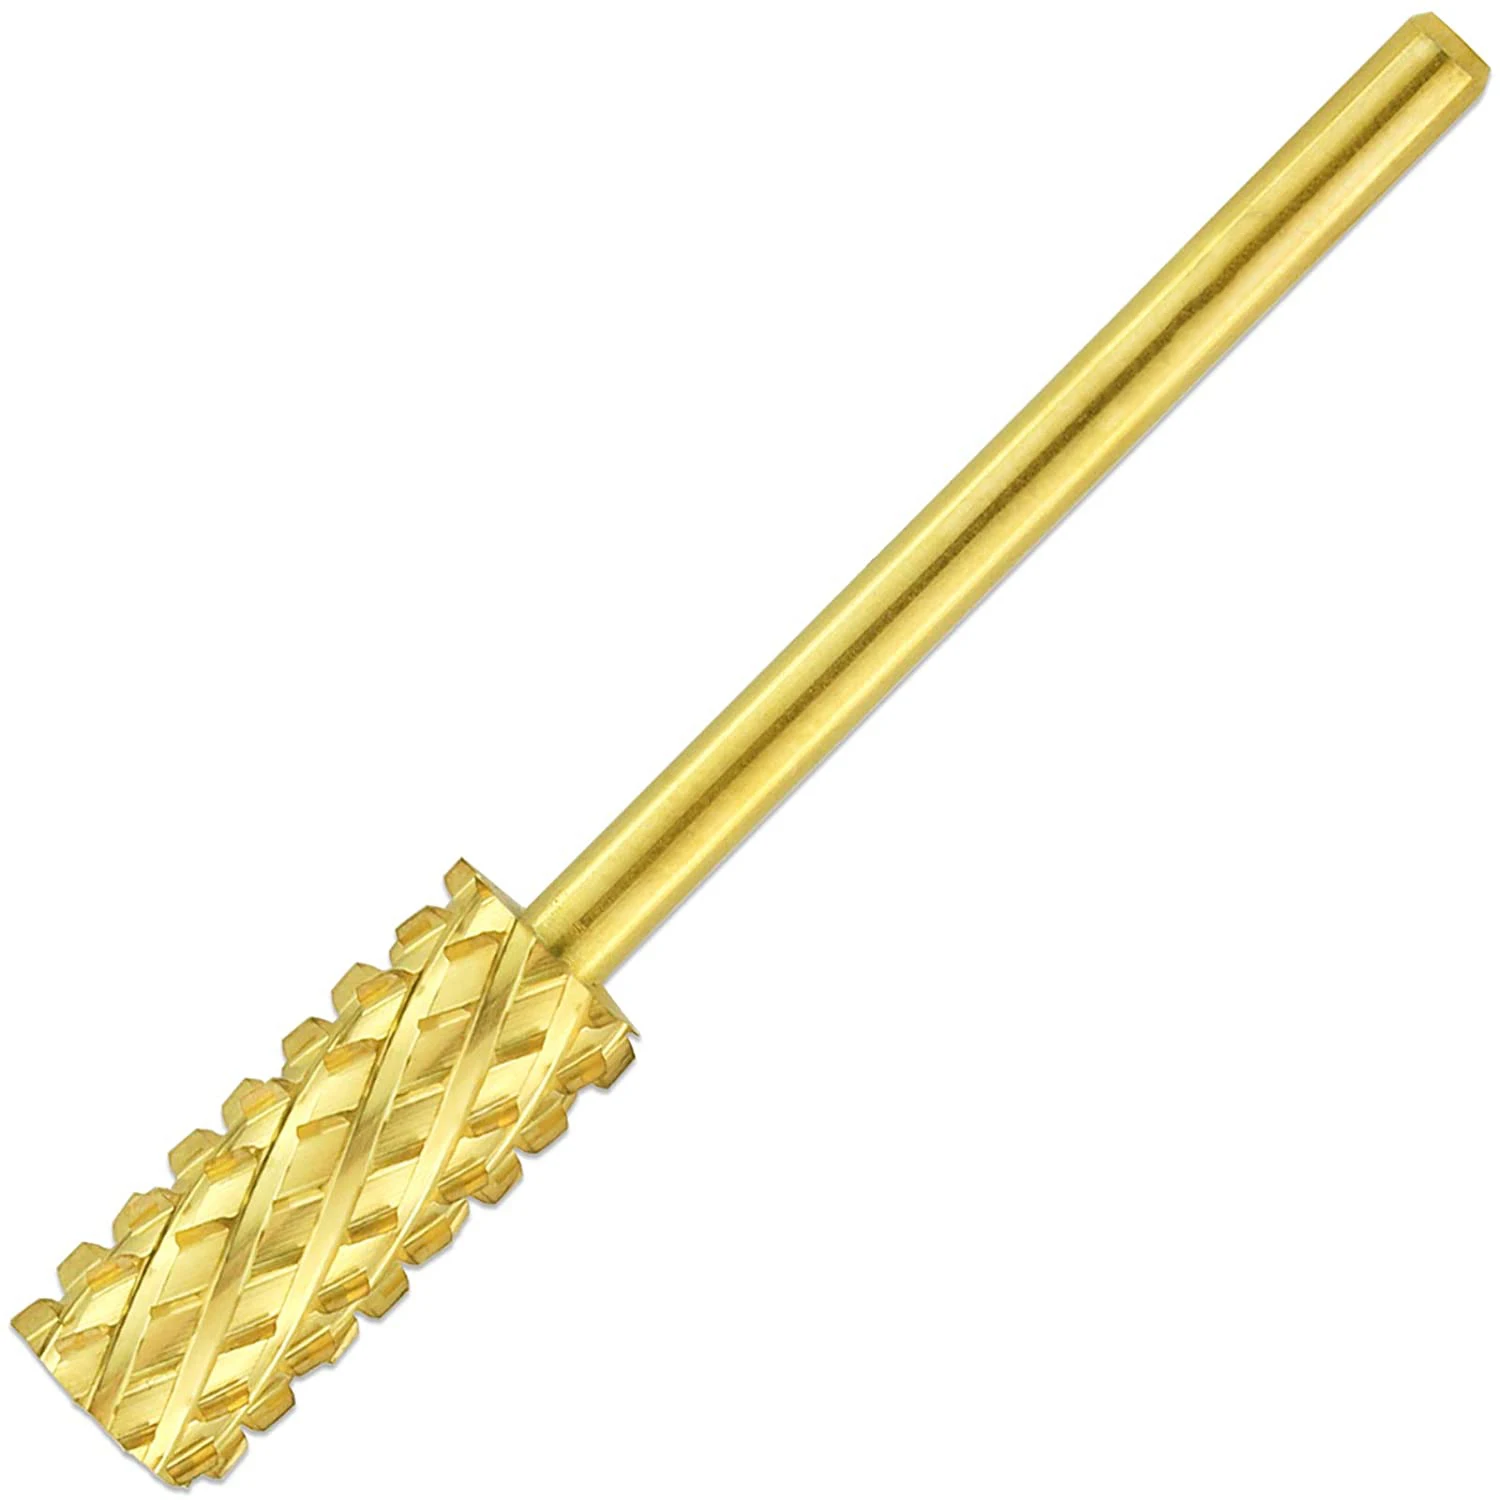 

Koofar Professional 3/32" Shank Size Flat Top Small Barrel Carbide Bit 4X Coarse Grit Gold Nail Drill Bit for Dremel Machine